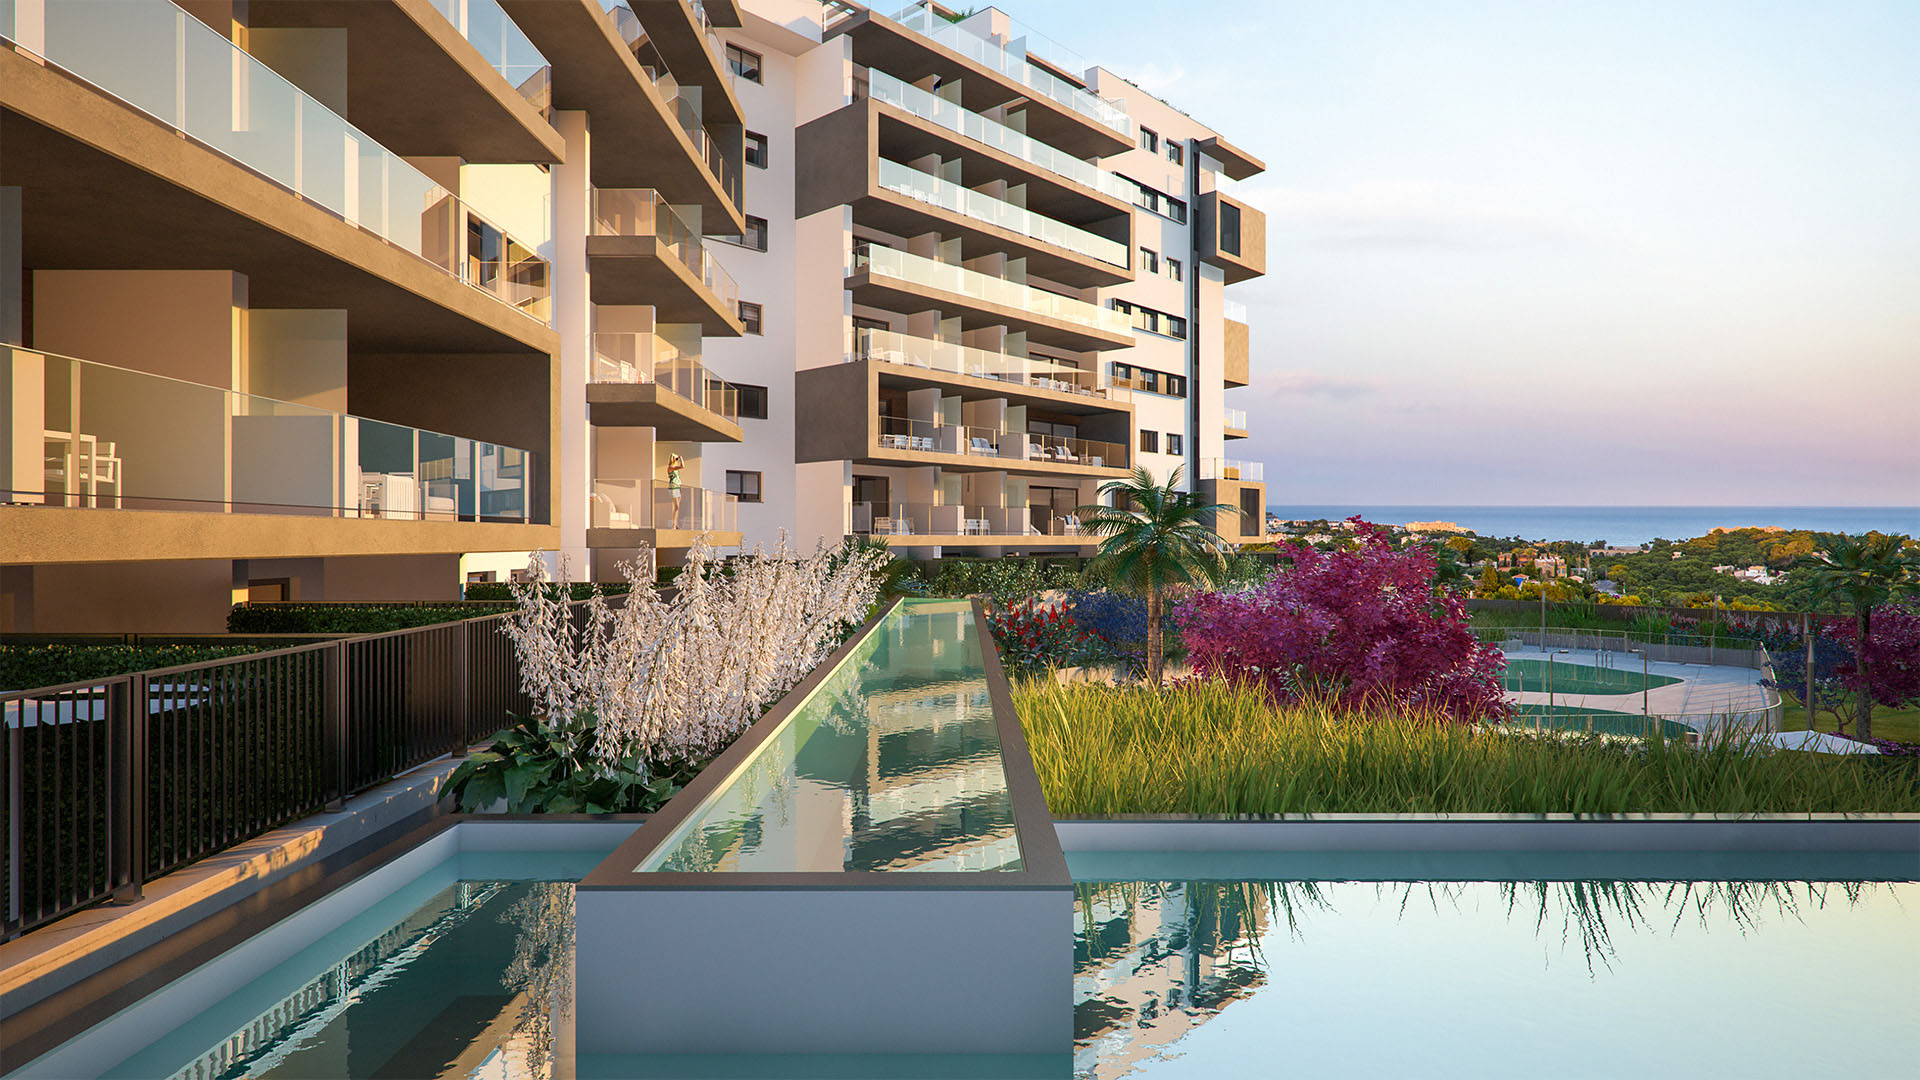 REF00464 Nowe apartamenty oraz wille w Campoamor na wybrzeżu Costa Blanca w Hiszpanii.